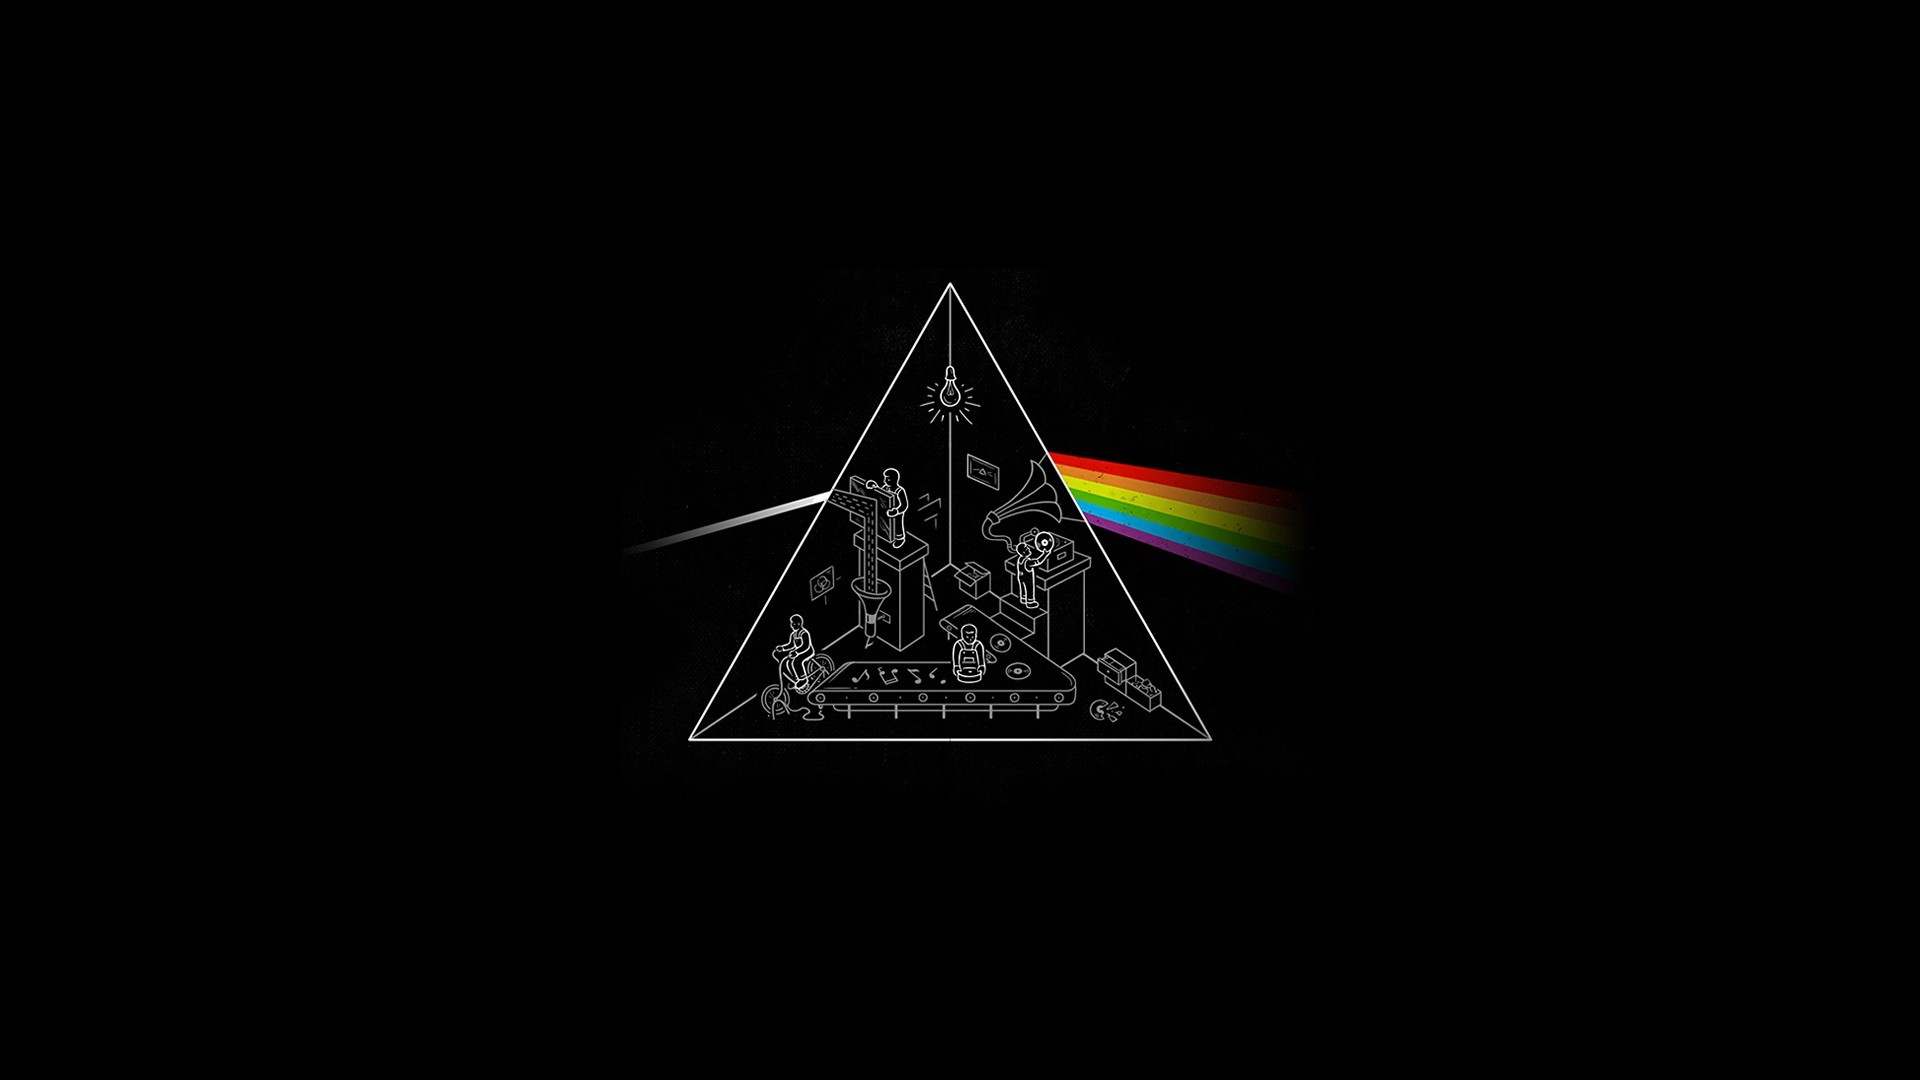 Pink Floyd Wallpaper 4k Pink Floyd Wallpaper 1080p